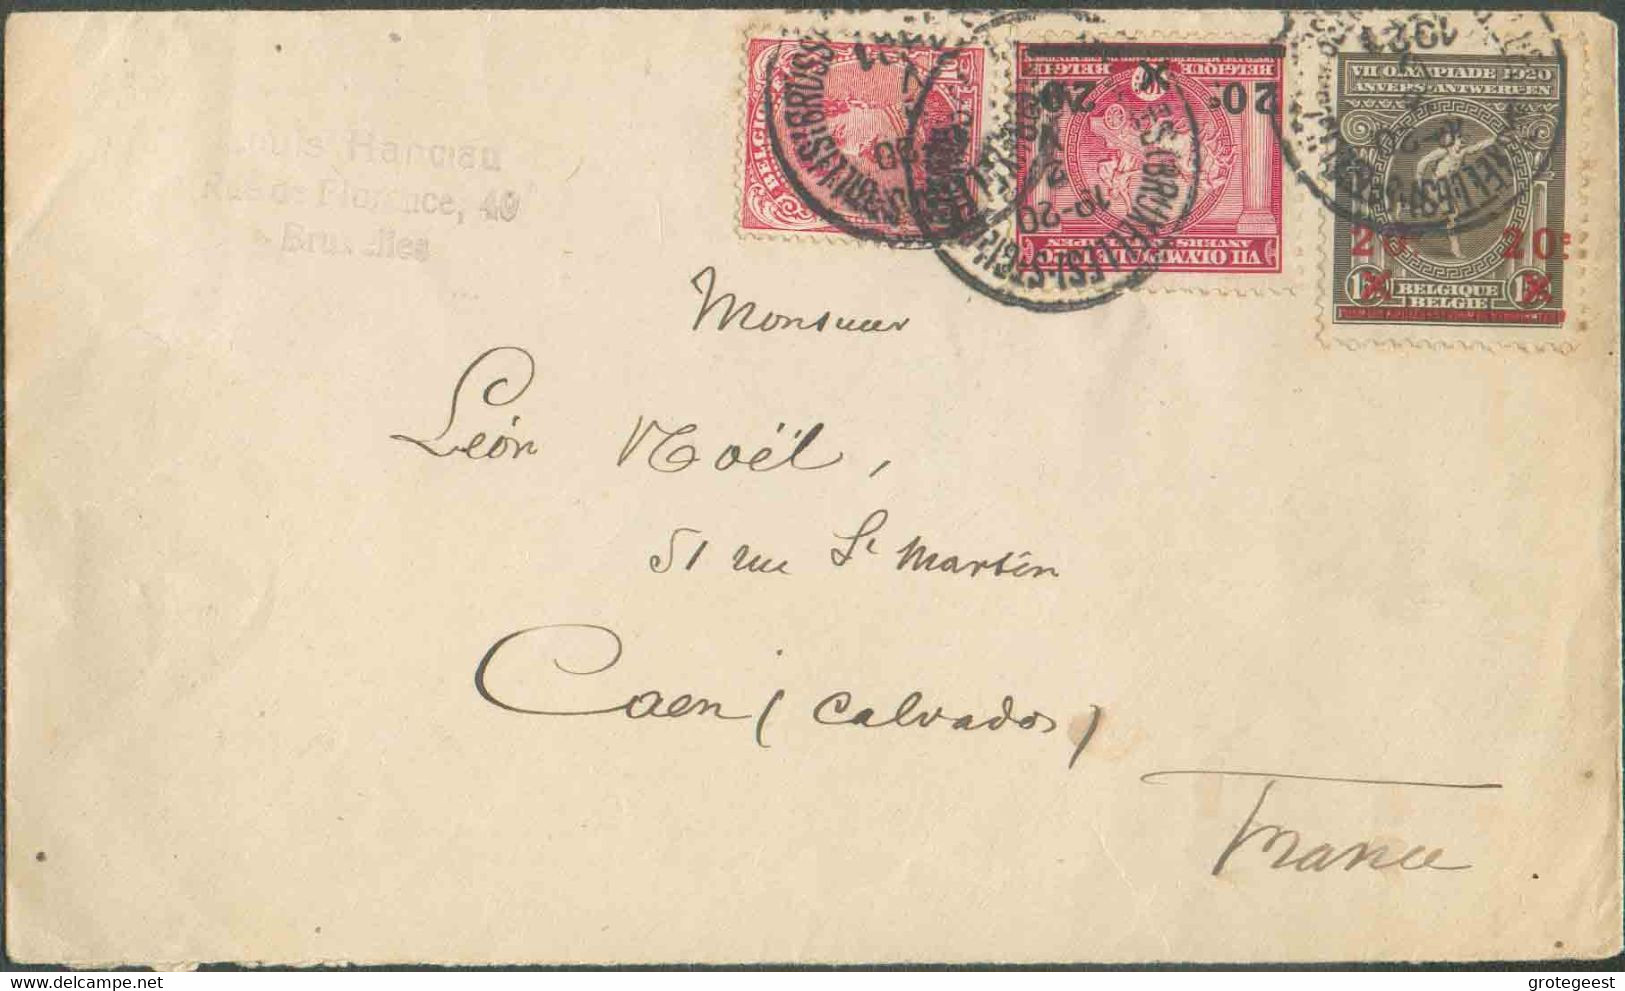 BELGIUM N°138-185/6 - Affr. Combiné à 50 Centimes Obl. Sc St-GILLES (BRUXELLES) s/L. Du 2-V-1921 Vers Caen. - TB - 17309 - Zomer 1920: Antwerpen